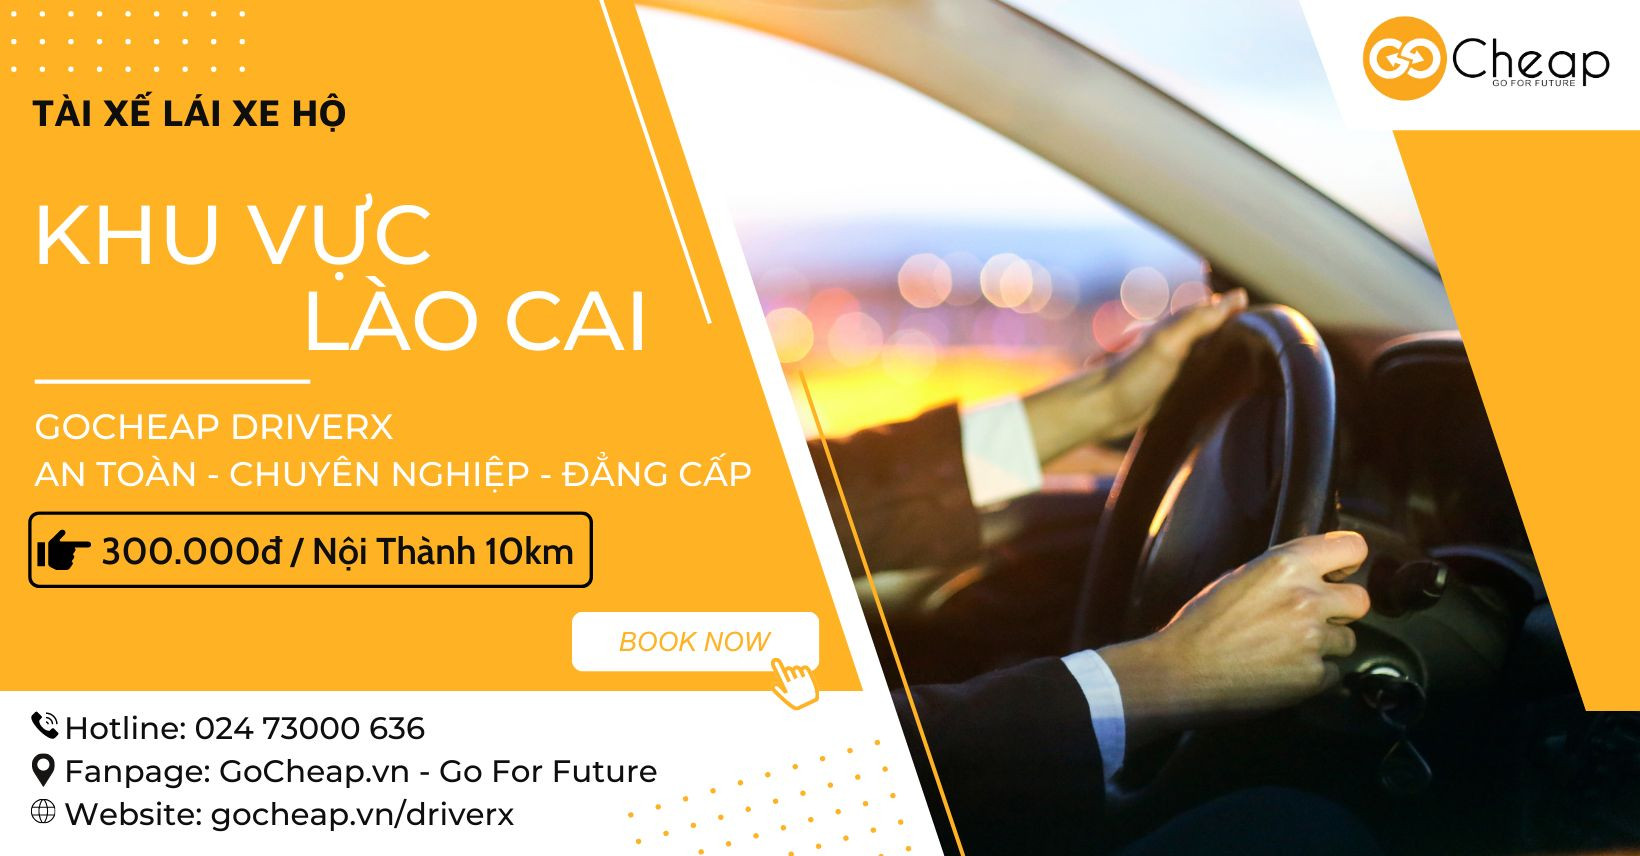 Dịch vụ tài xế lái hộ DriverX ra mắt tại Lào Cai